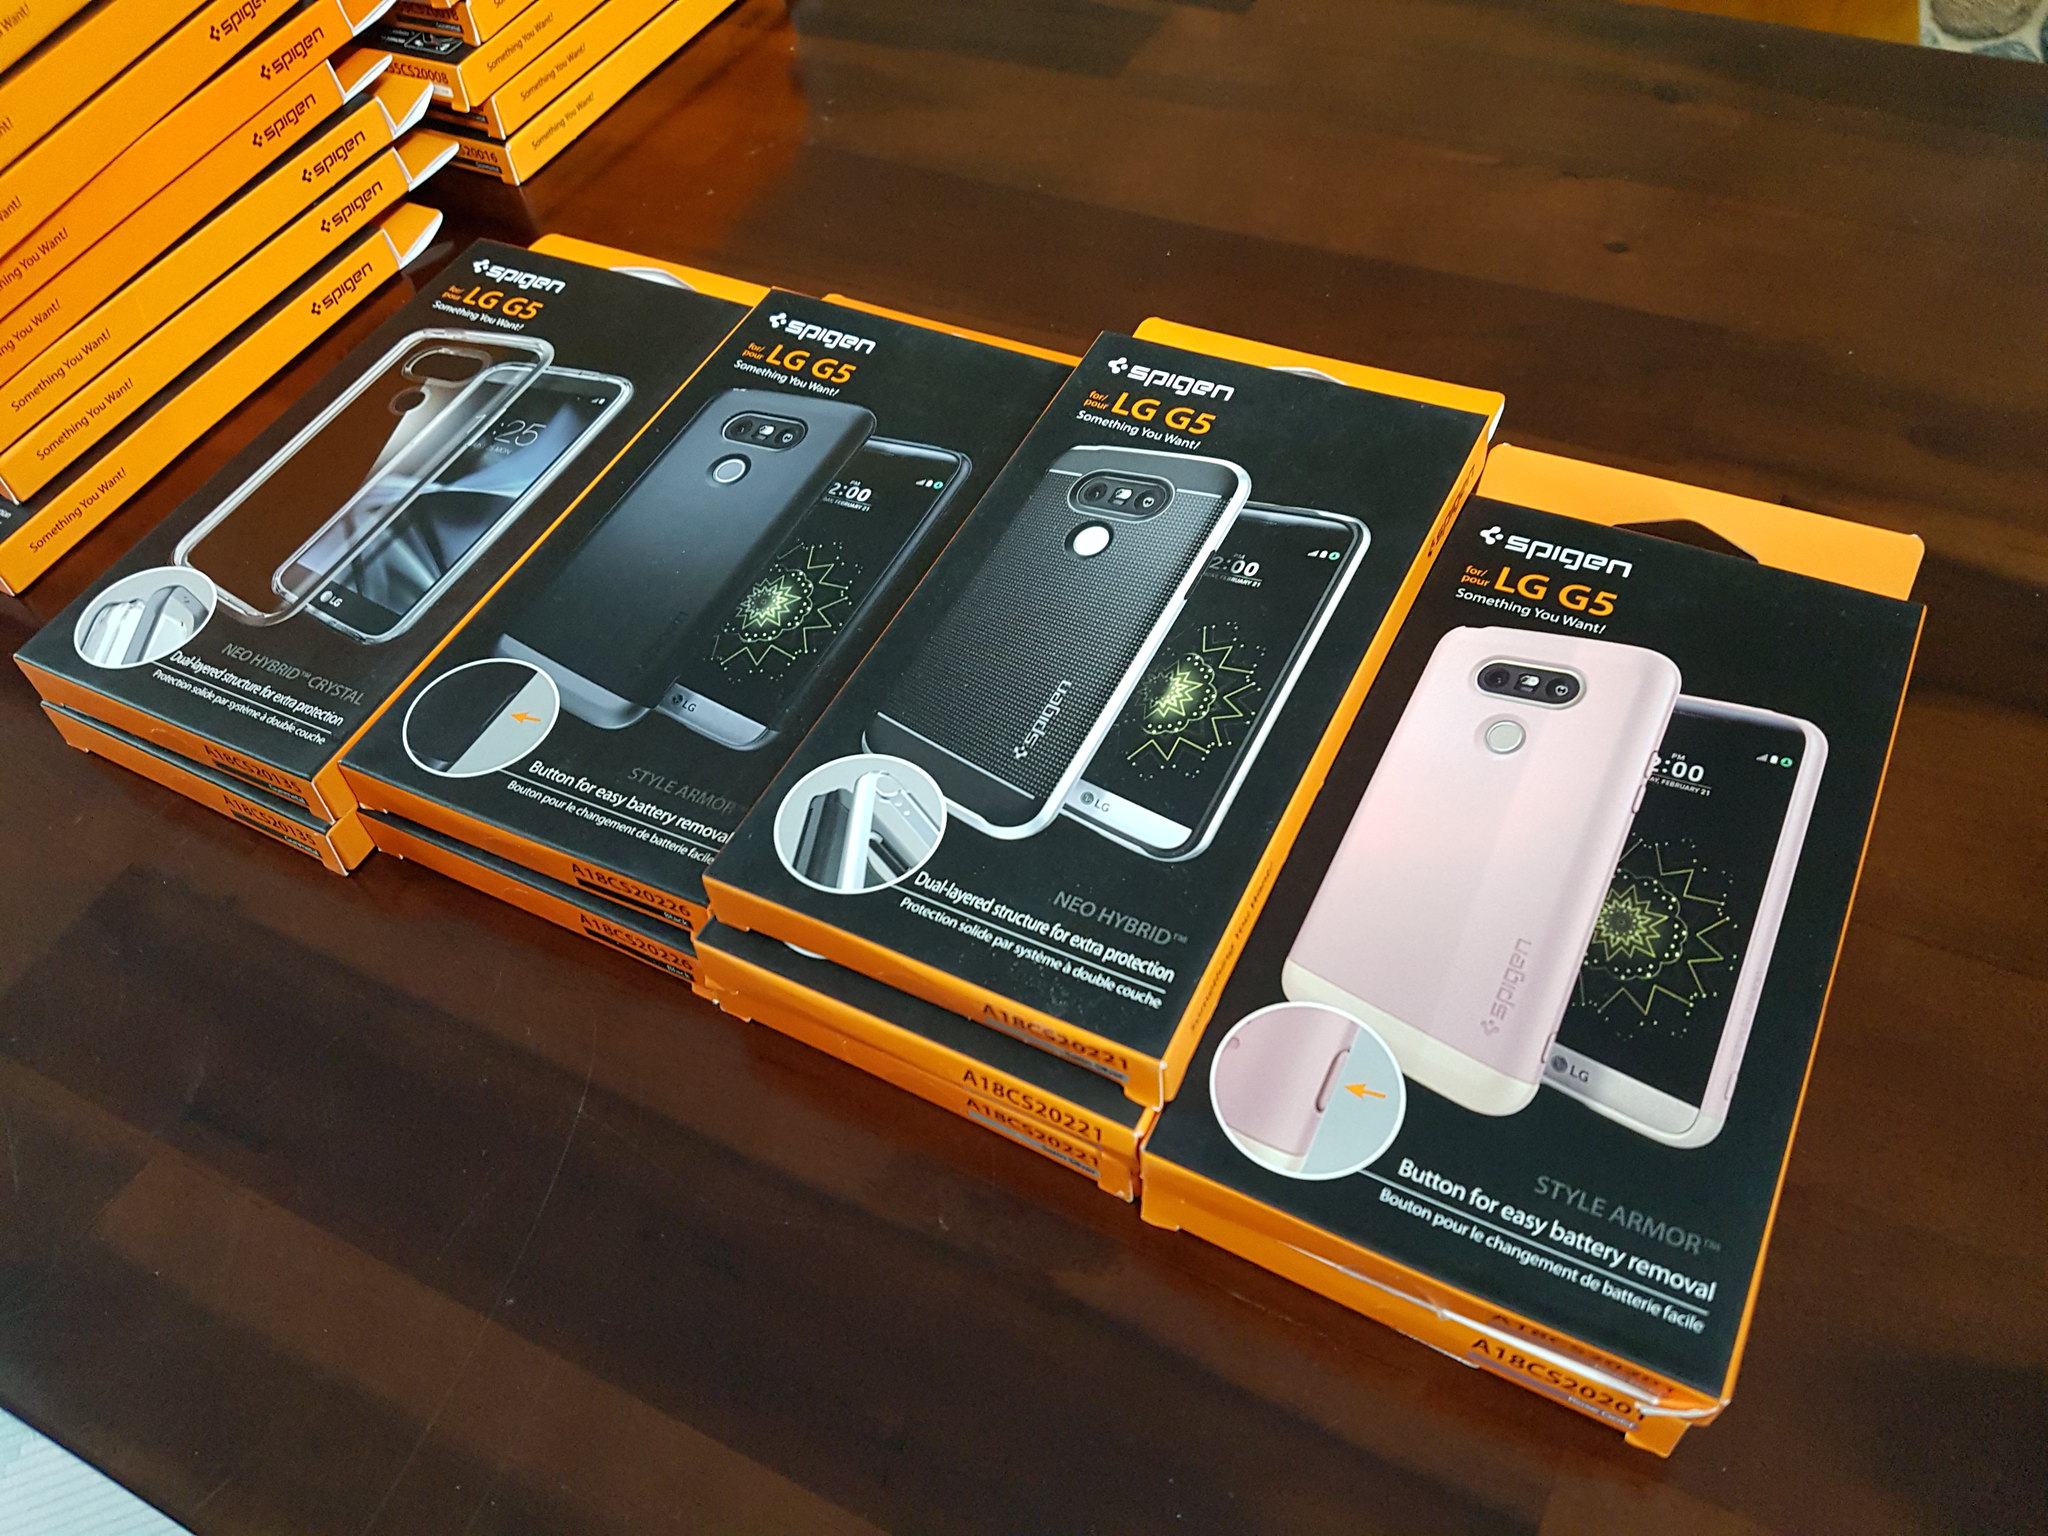 Ốp lưng Spigen iPhone SE,5s,5, S7,S7 Edge, Note5, HTC10, Nexus siêu rẻ chất lượng Mỹ - 13